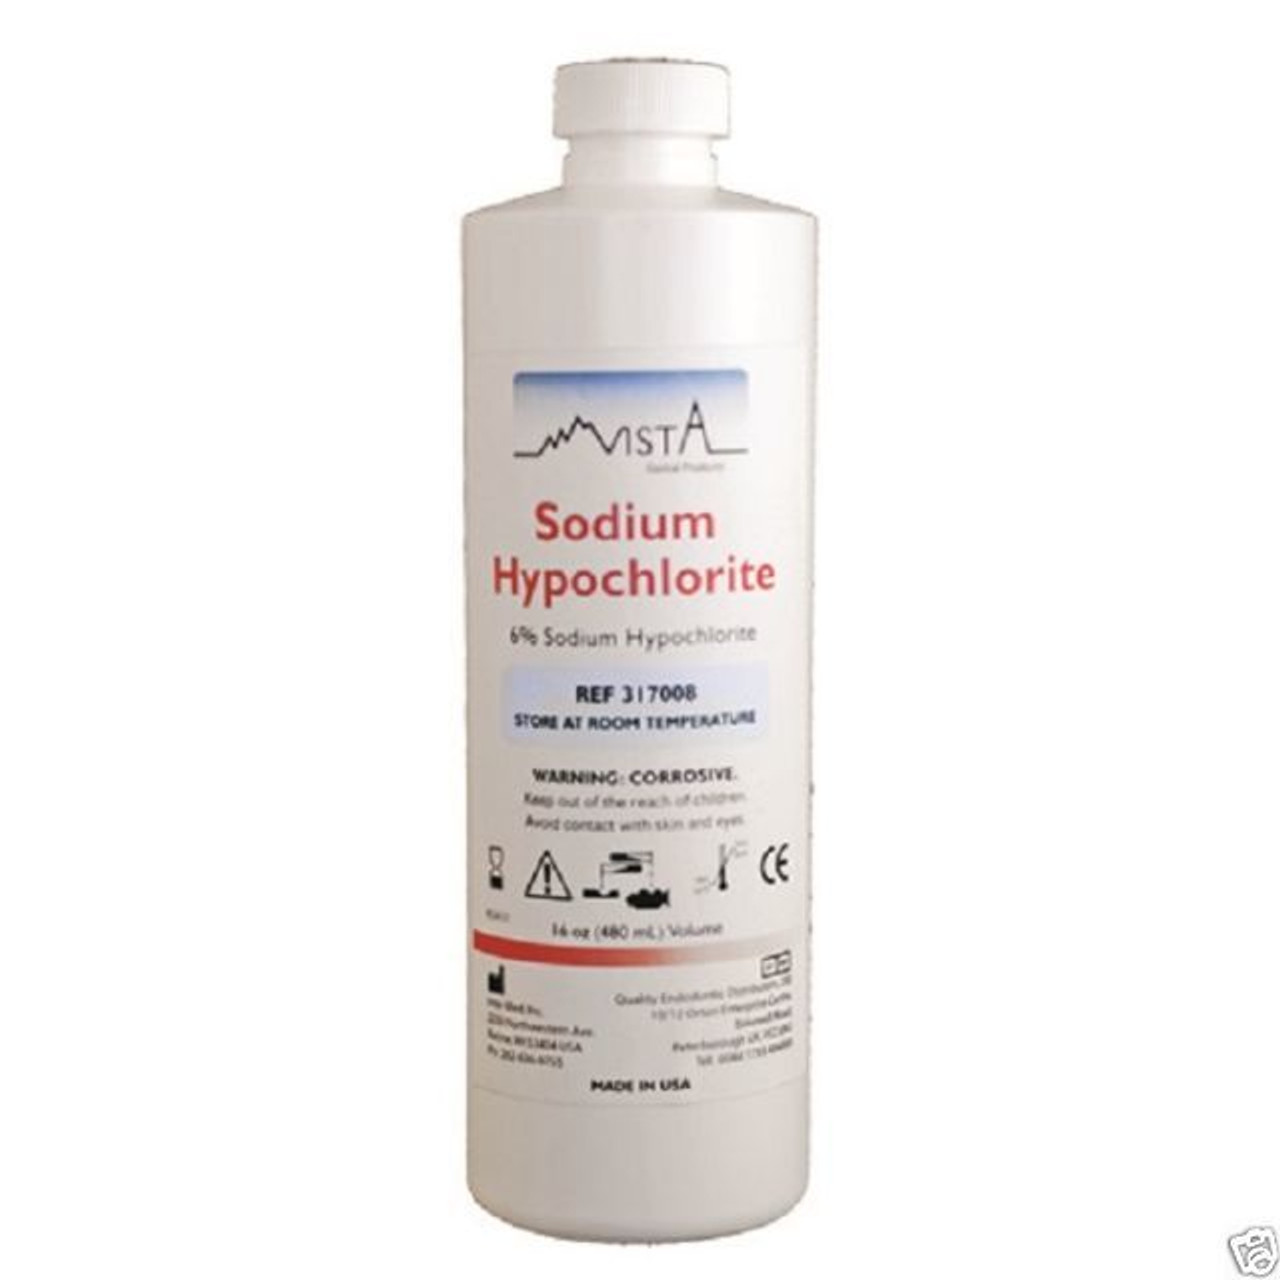 Sodium Hypochlorite Solution 6% 16oz